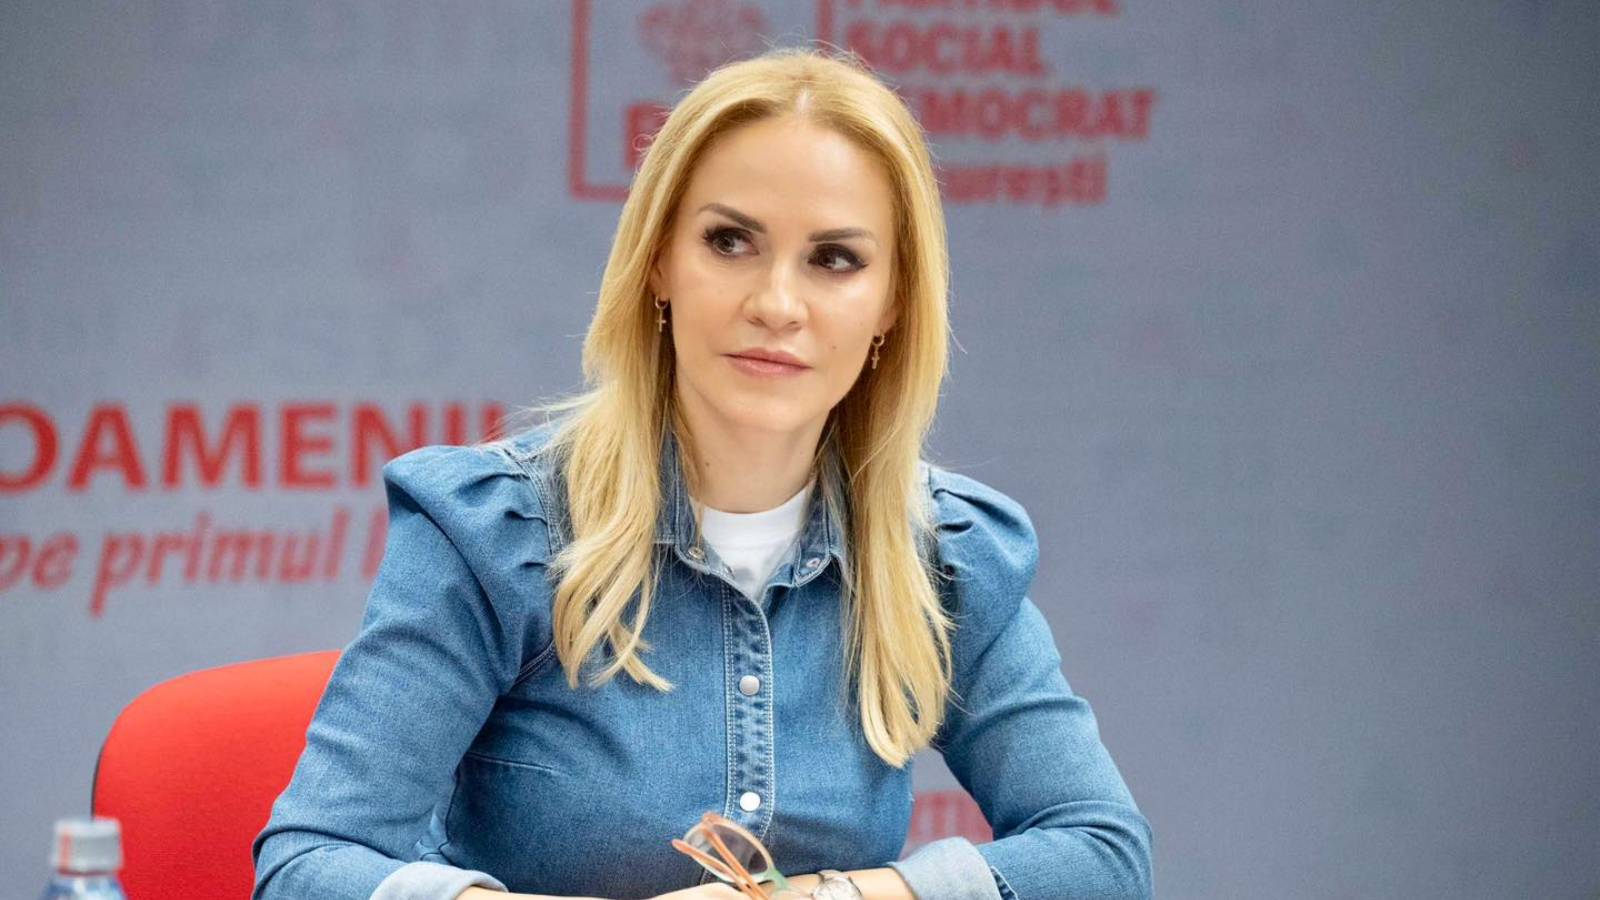 Gabriela Firea Officiële aankondigingen LAST MINUTE Aanwijzing PSD-kandidaat Stadhuis van Boekarest